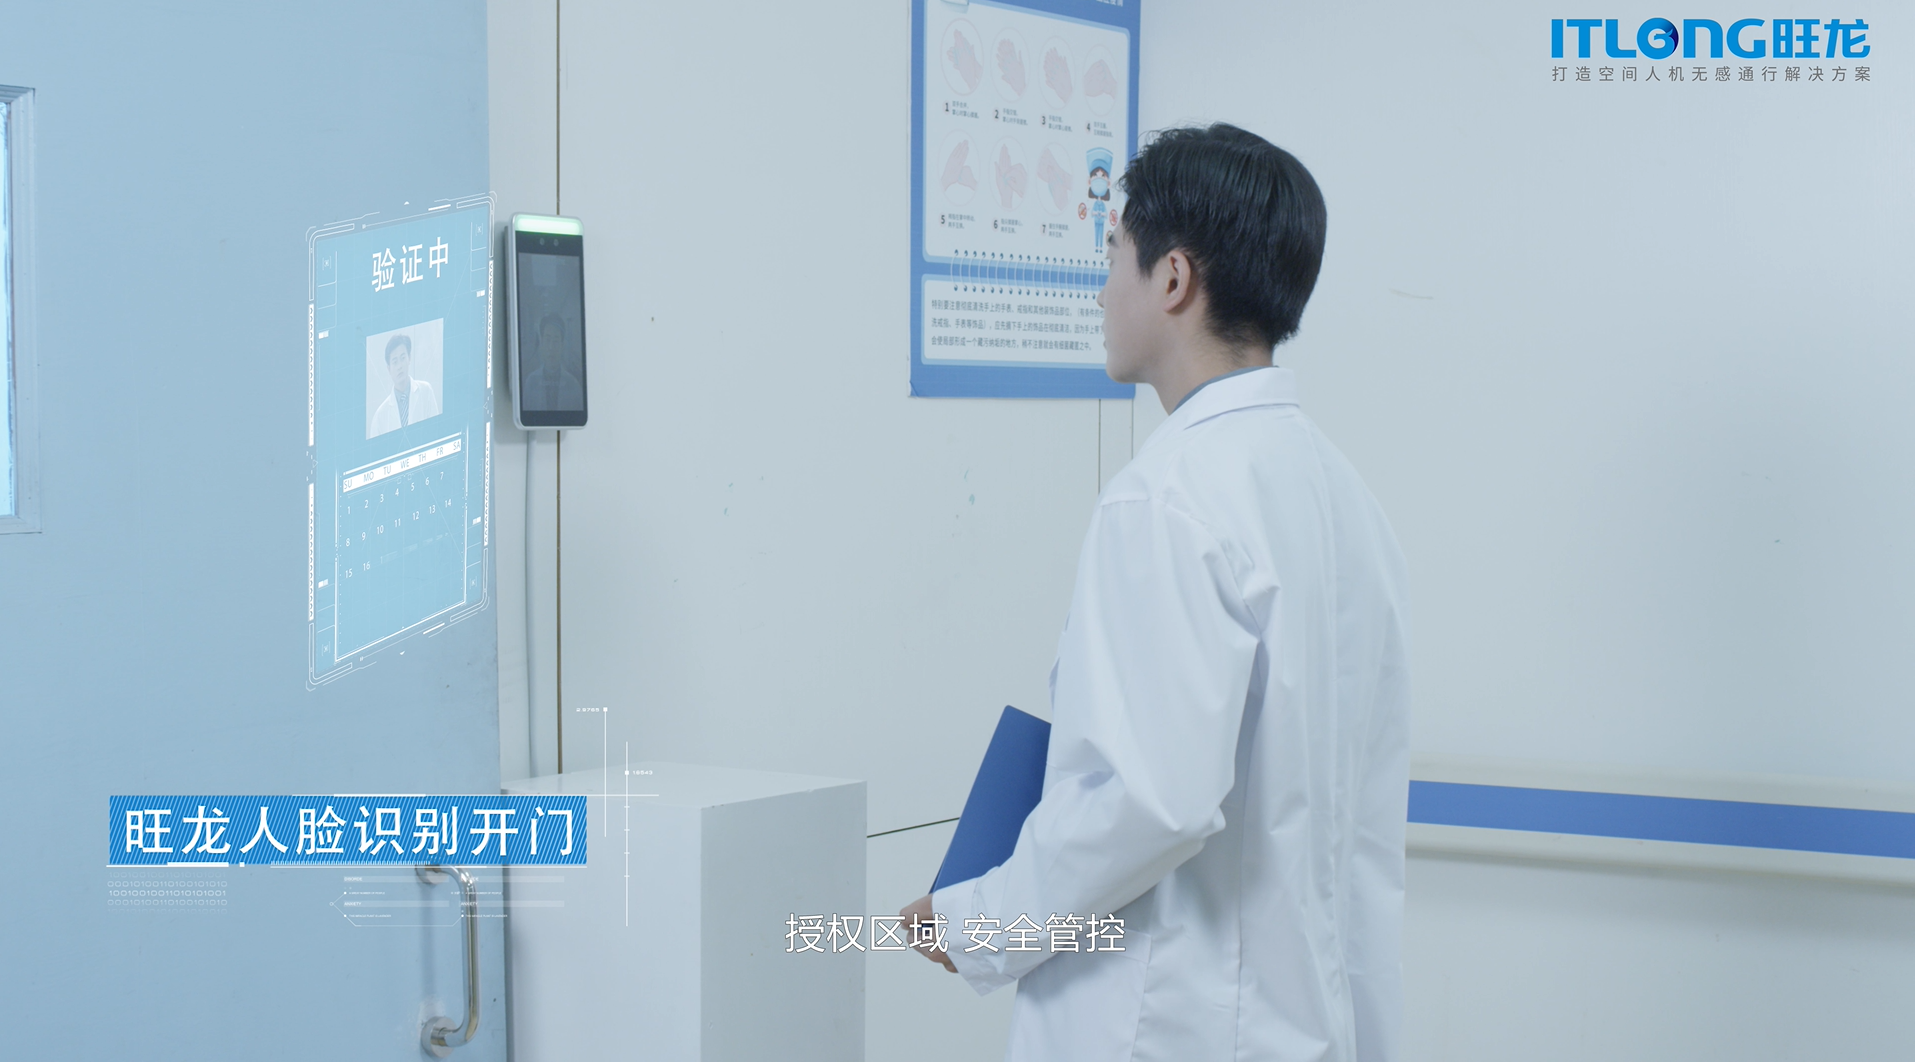 旺龙四类机器人并用，实现真正智能化的医院场景人机无感通行解决方案